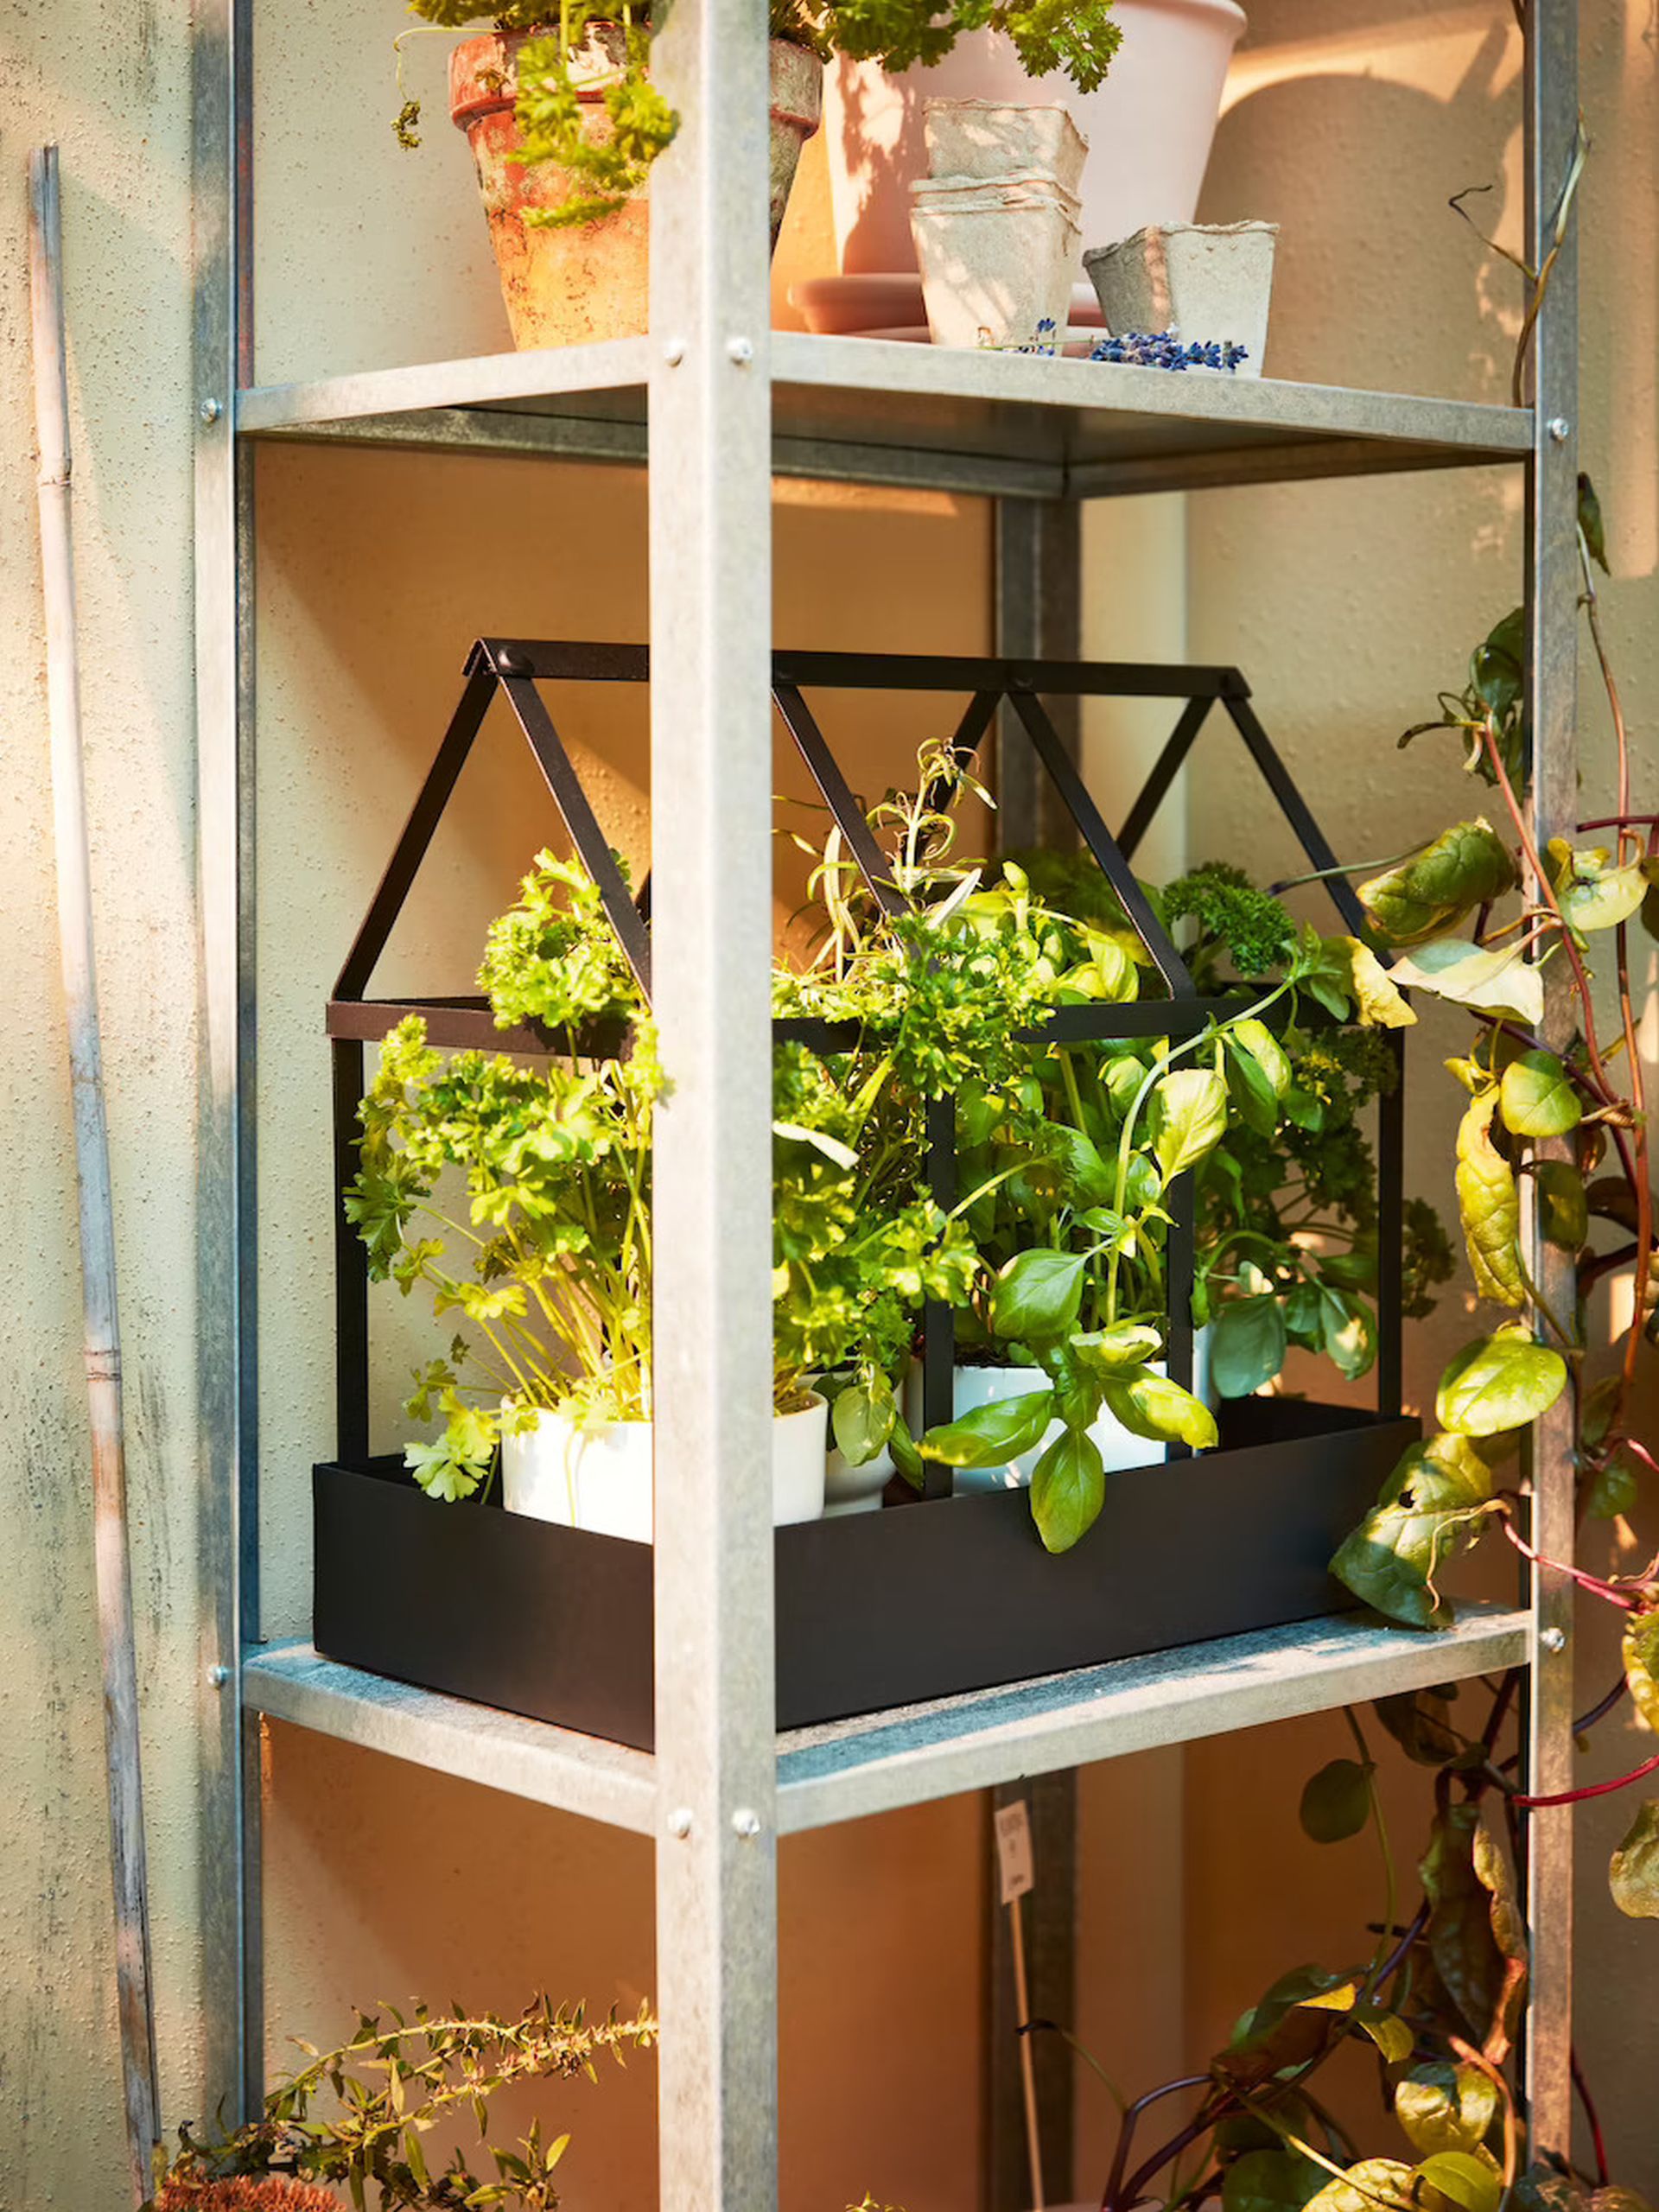 W uprawie ciepłolubnych ziół i warzyw pomoże balkonowa szklarnia. Fot. IKEA